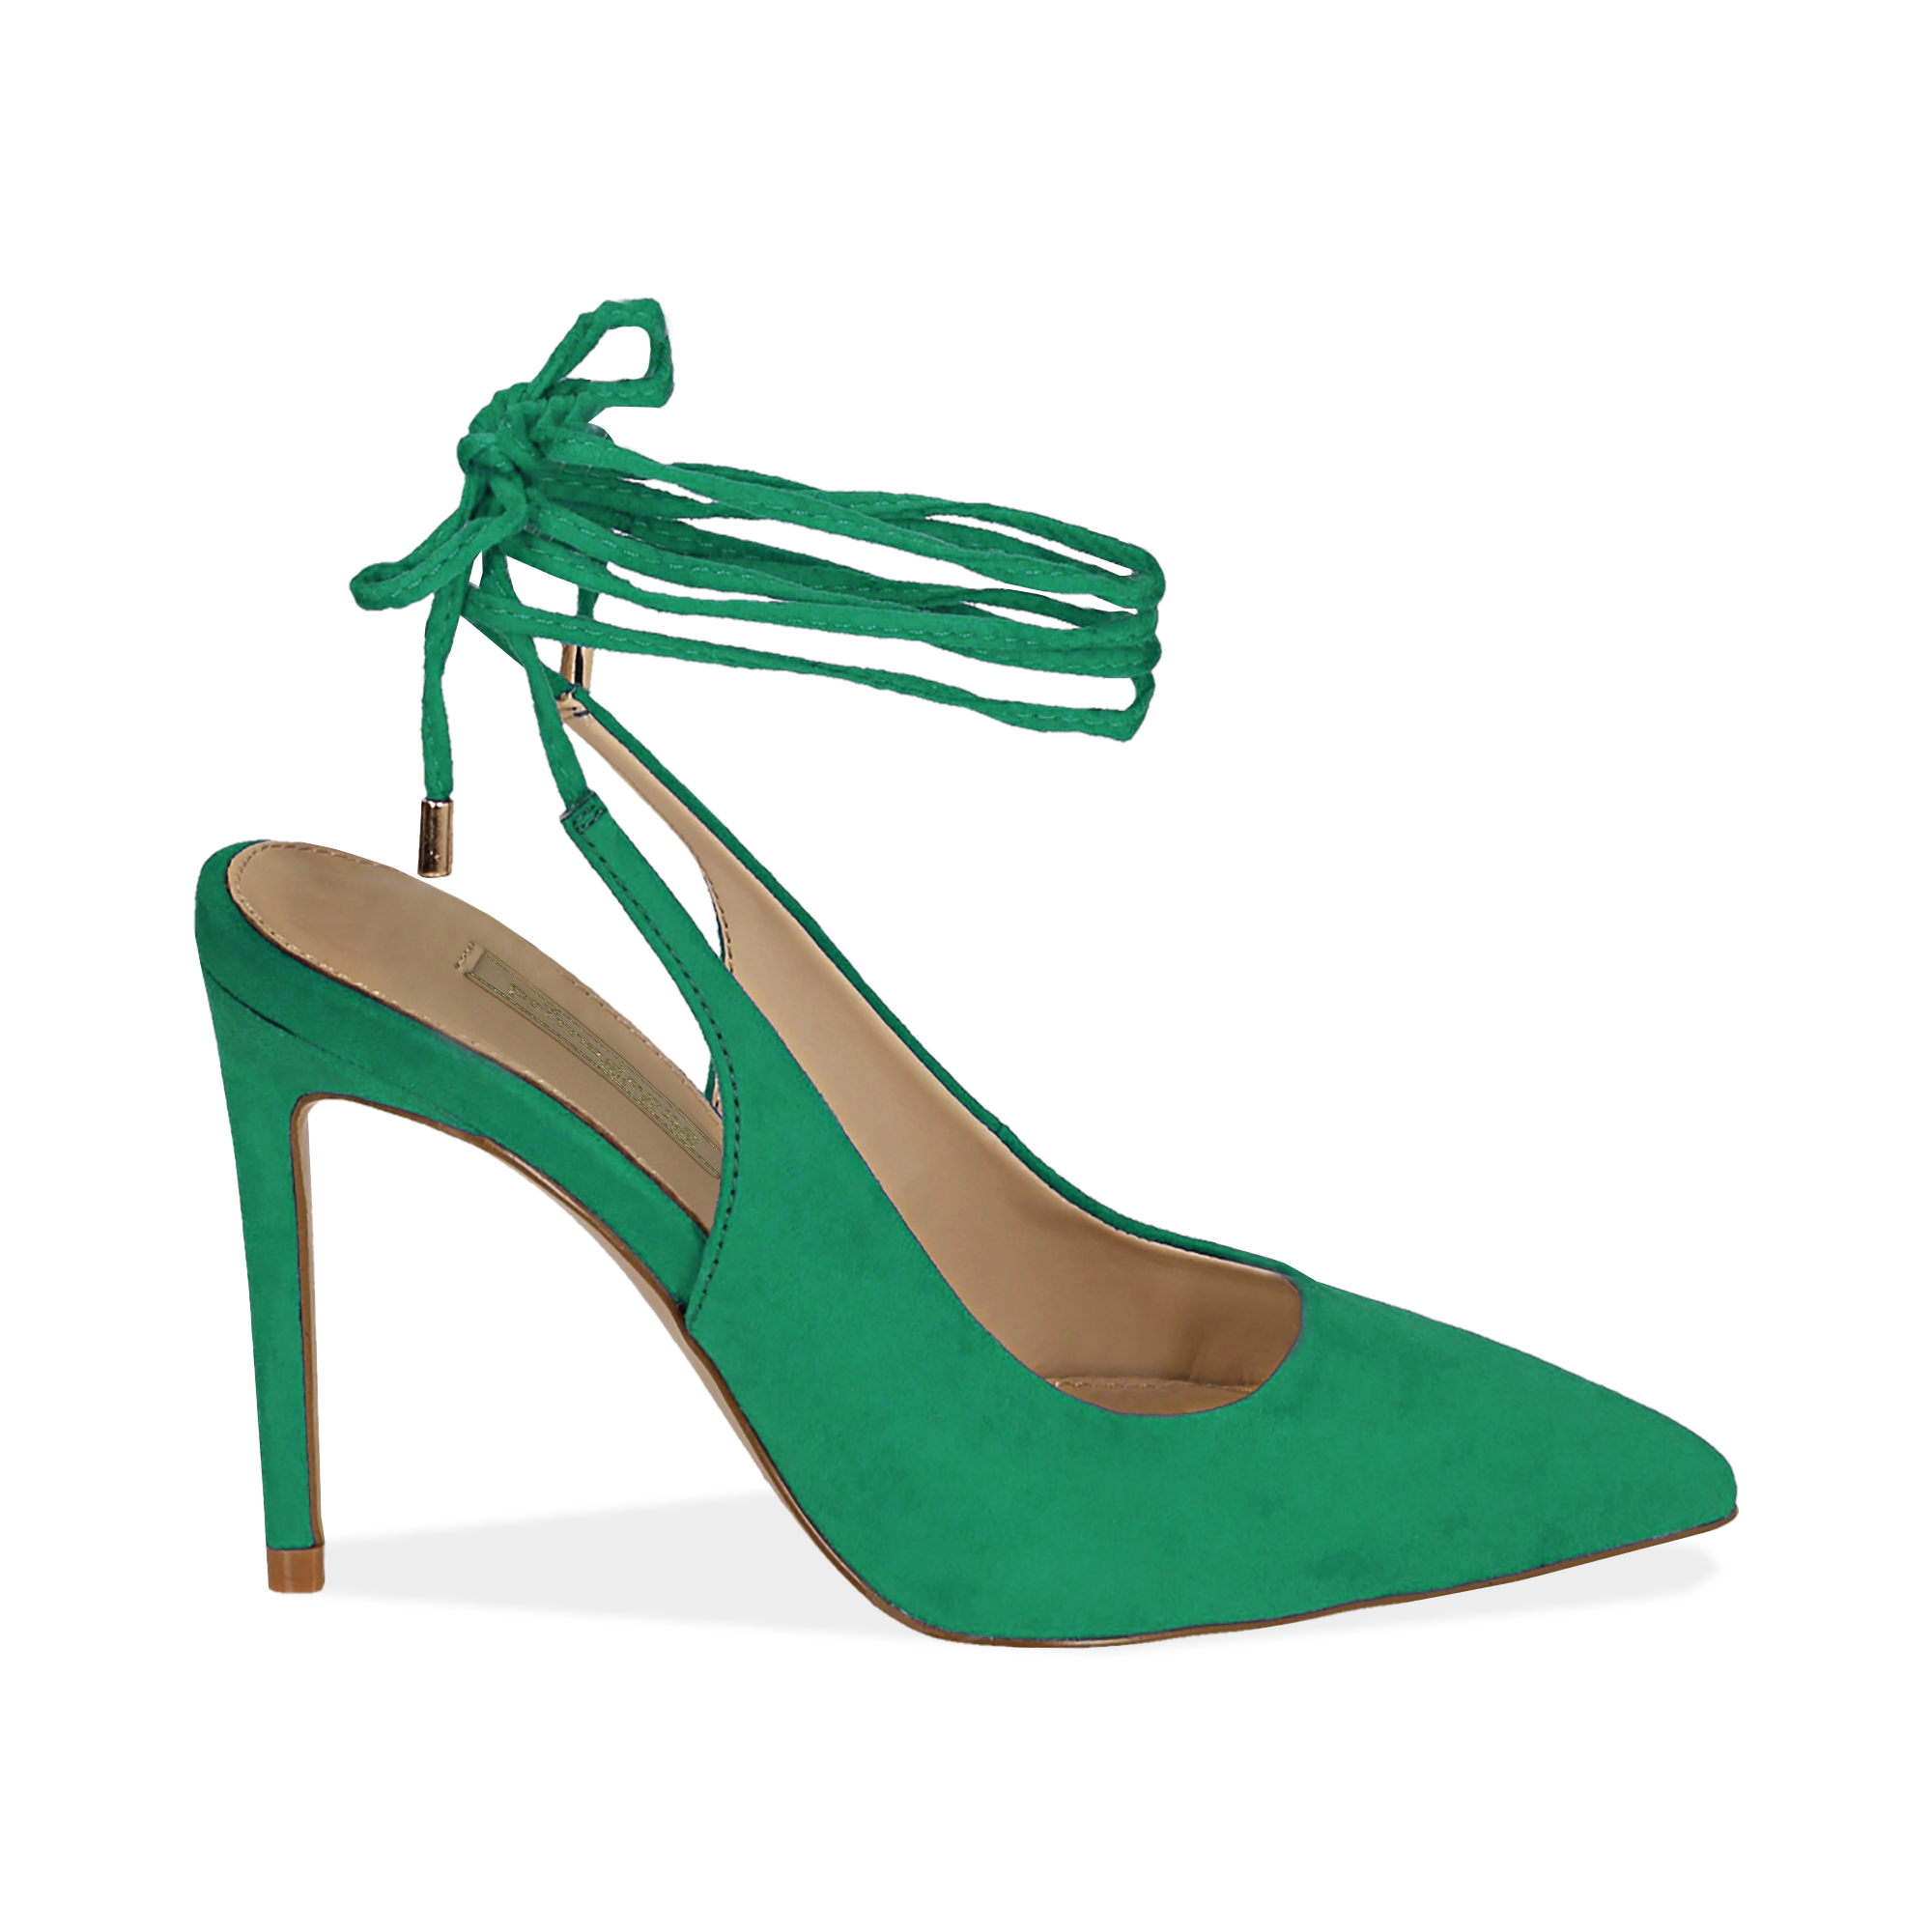 scarpe verdi con tacco